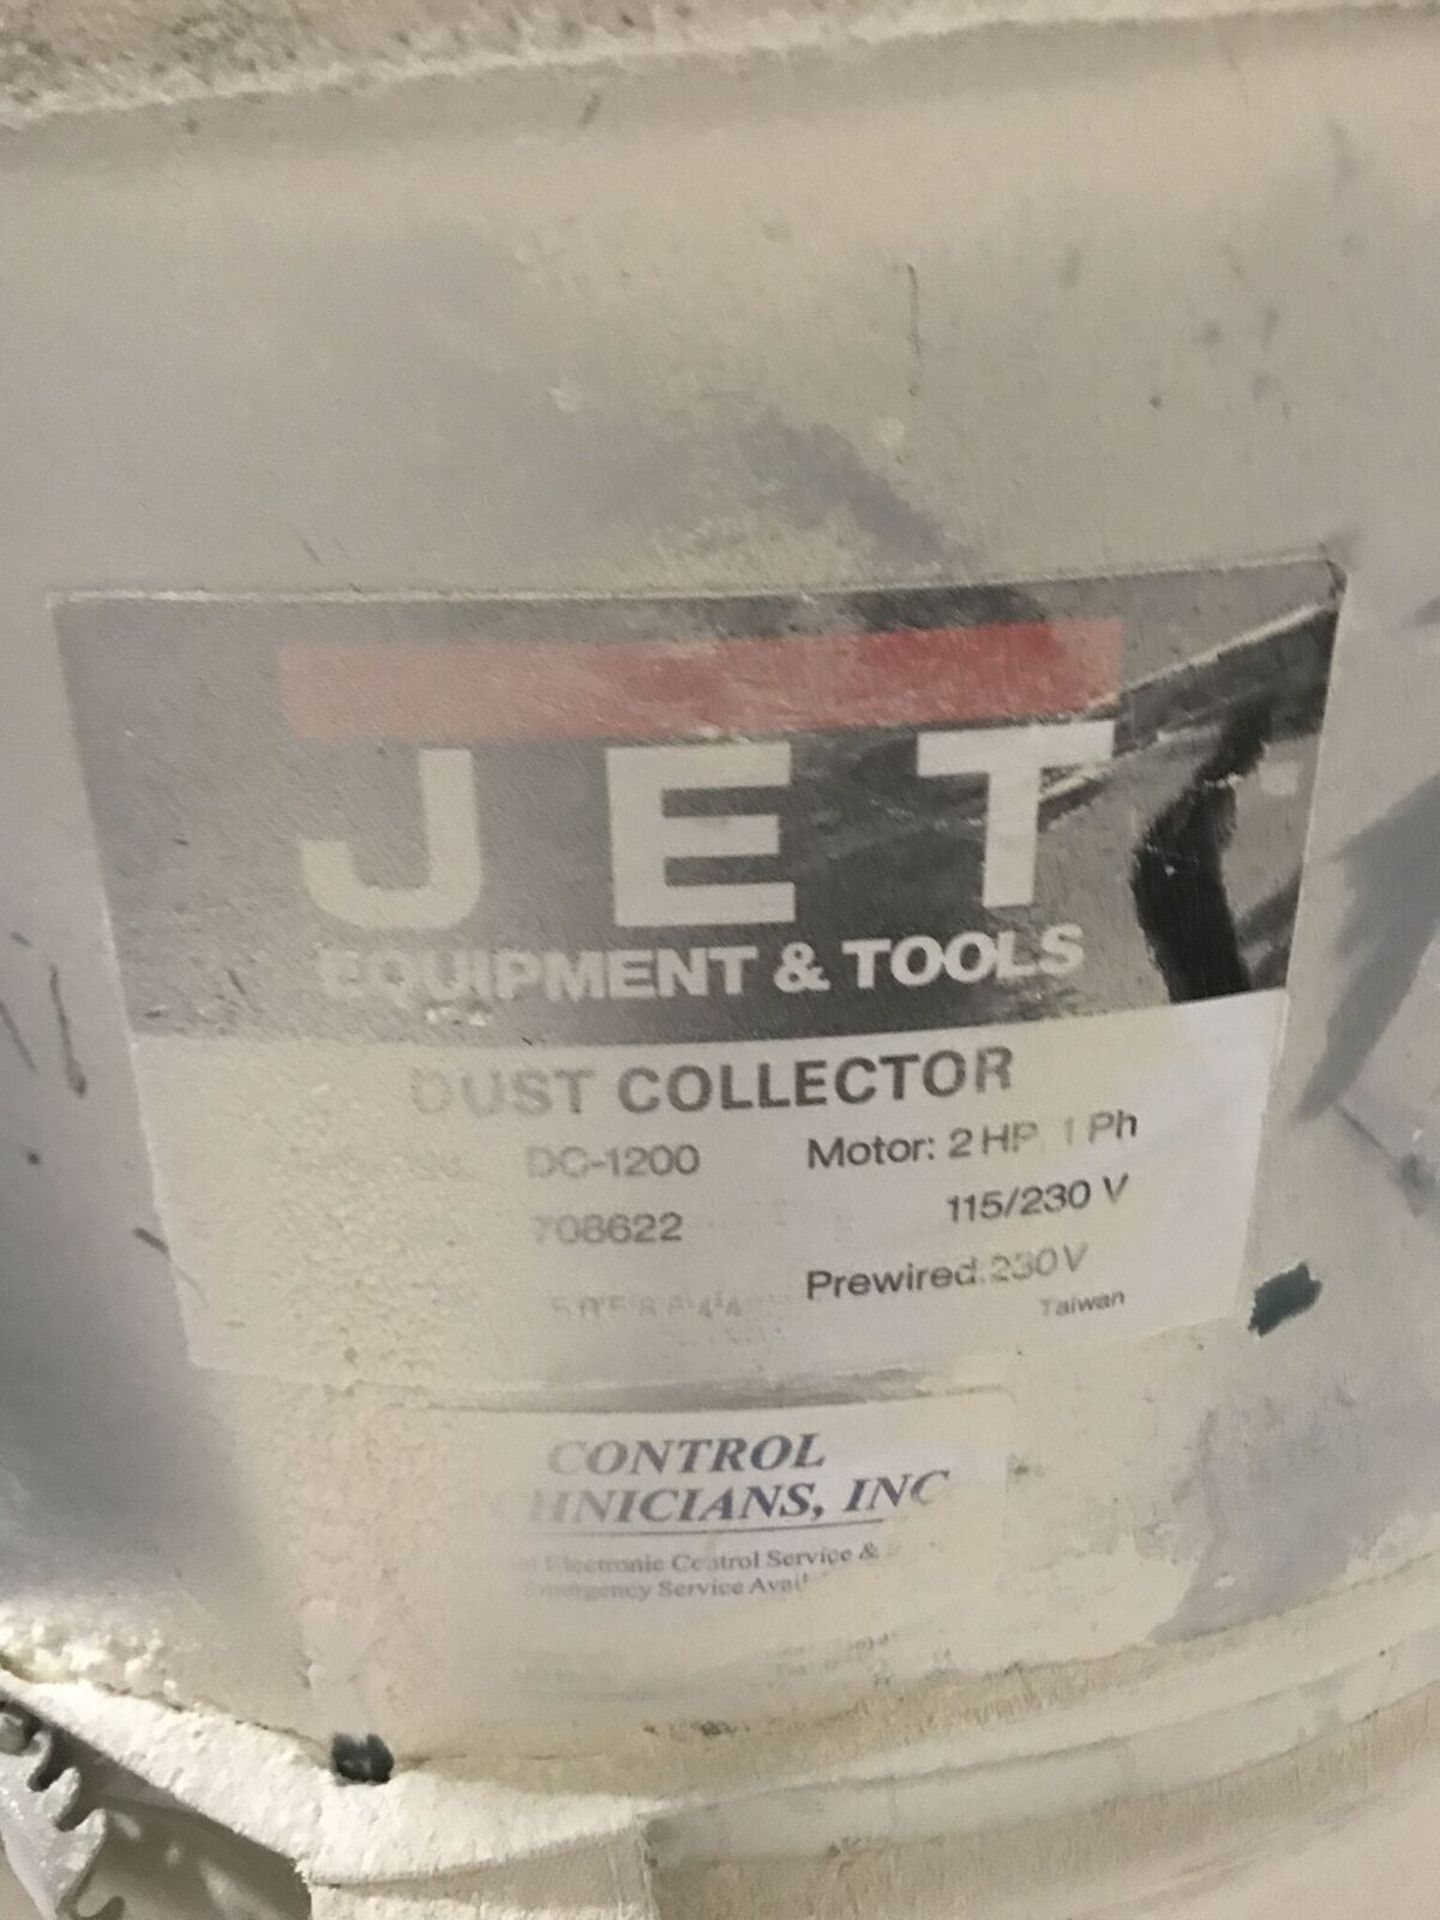 Jet Belt Sander, Model #JSG-96, Serial #51014677, Rigging Fee $20 - Image 3 of 4